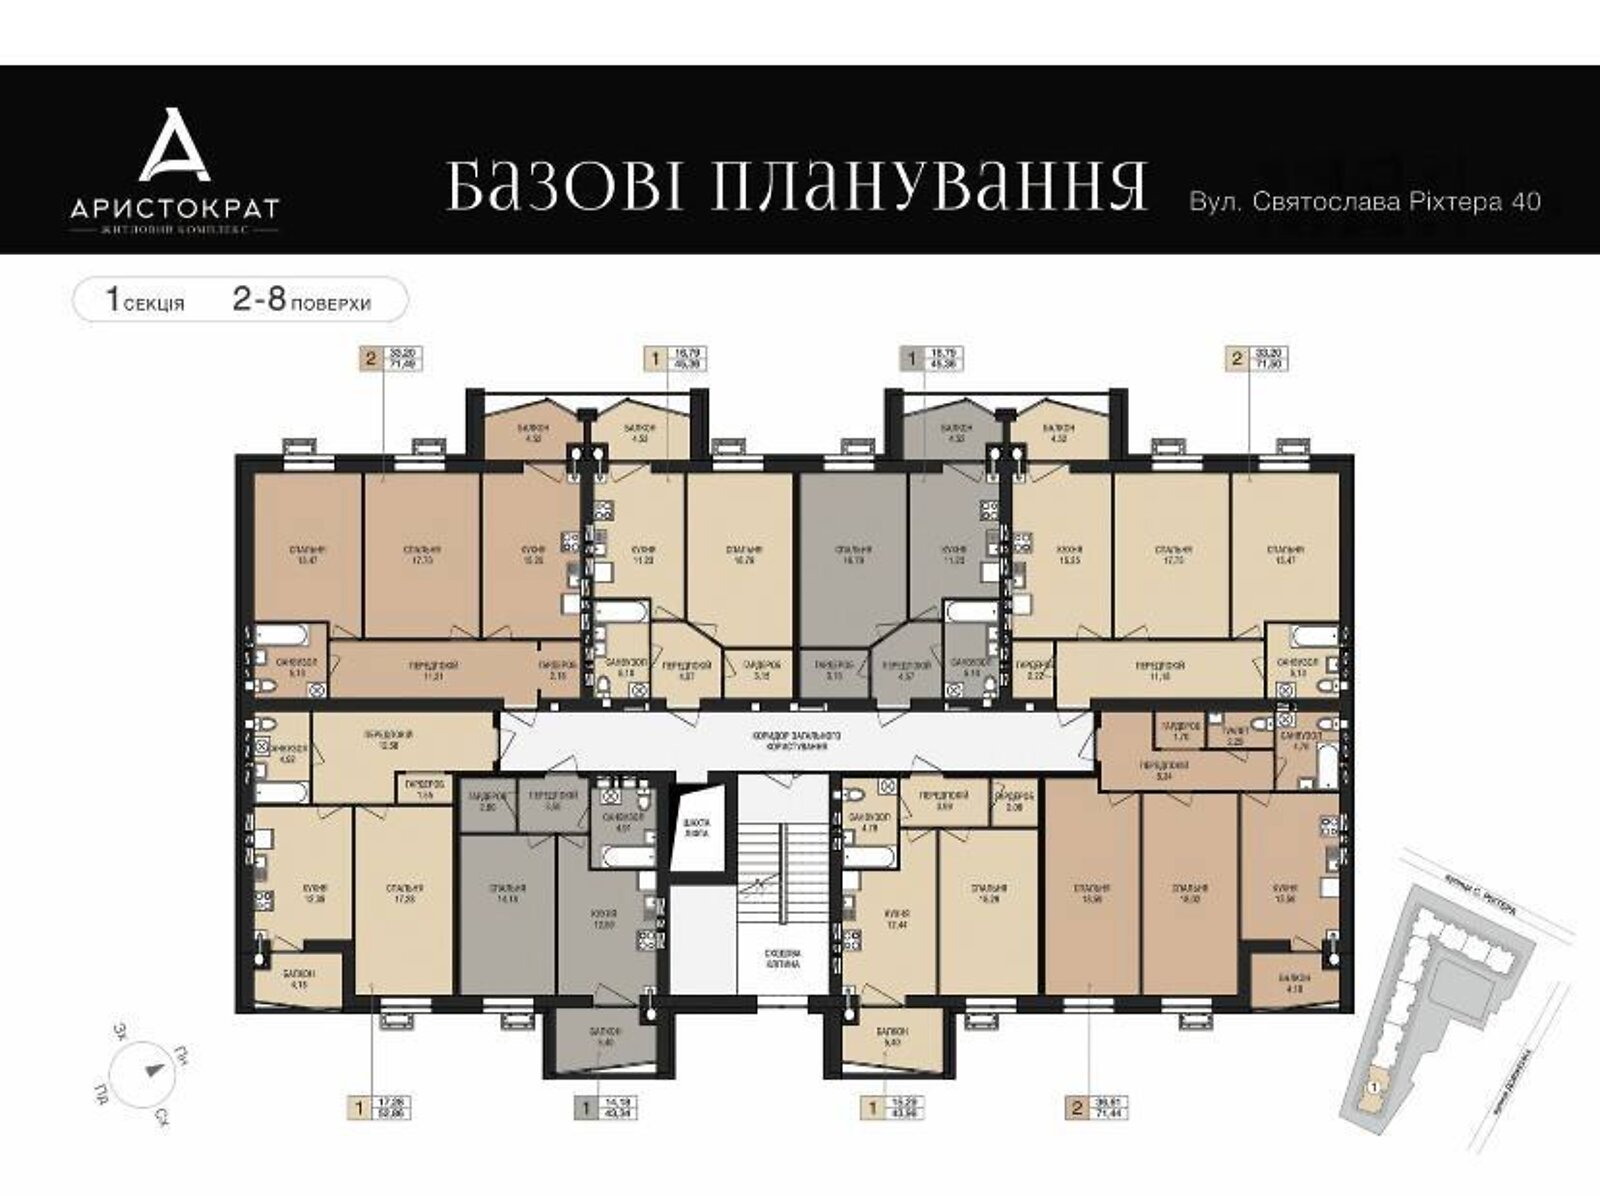 Продажа однокомнатной квартиры в Житомире, на ул. Святослава Рихтера 40, фото 1